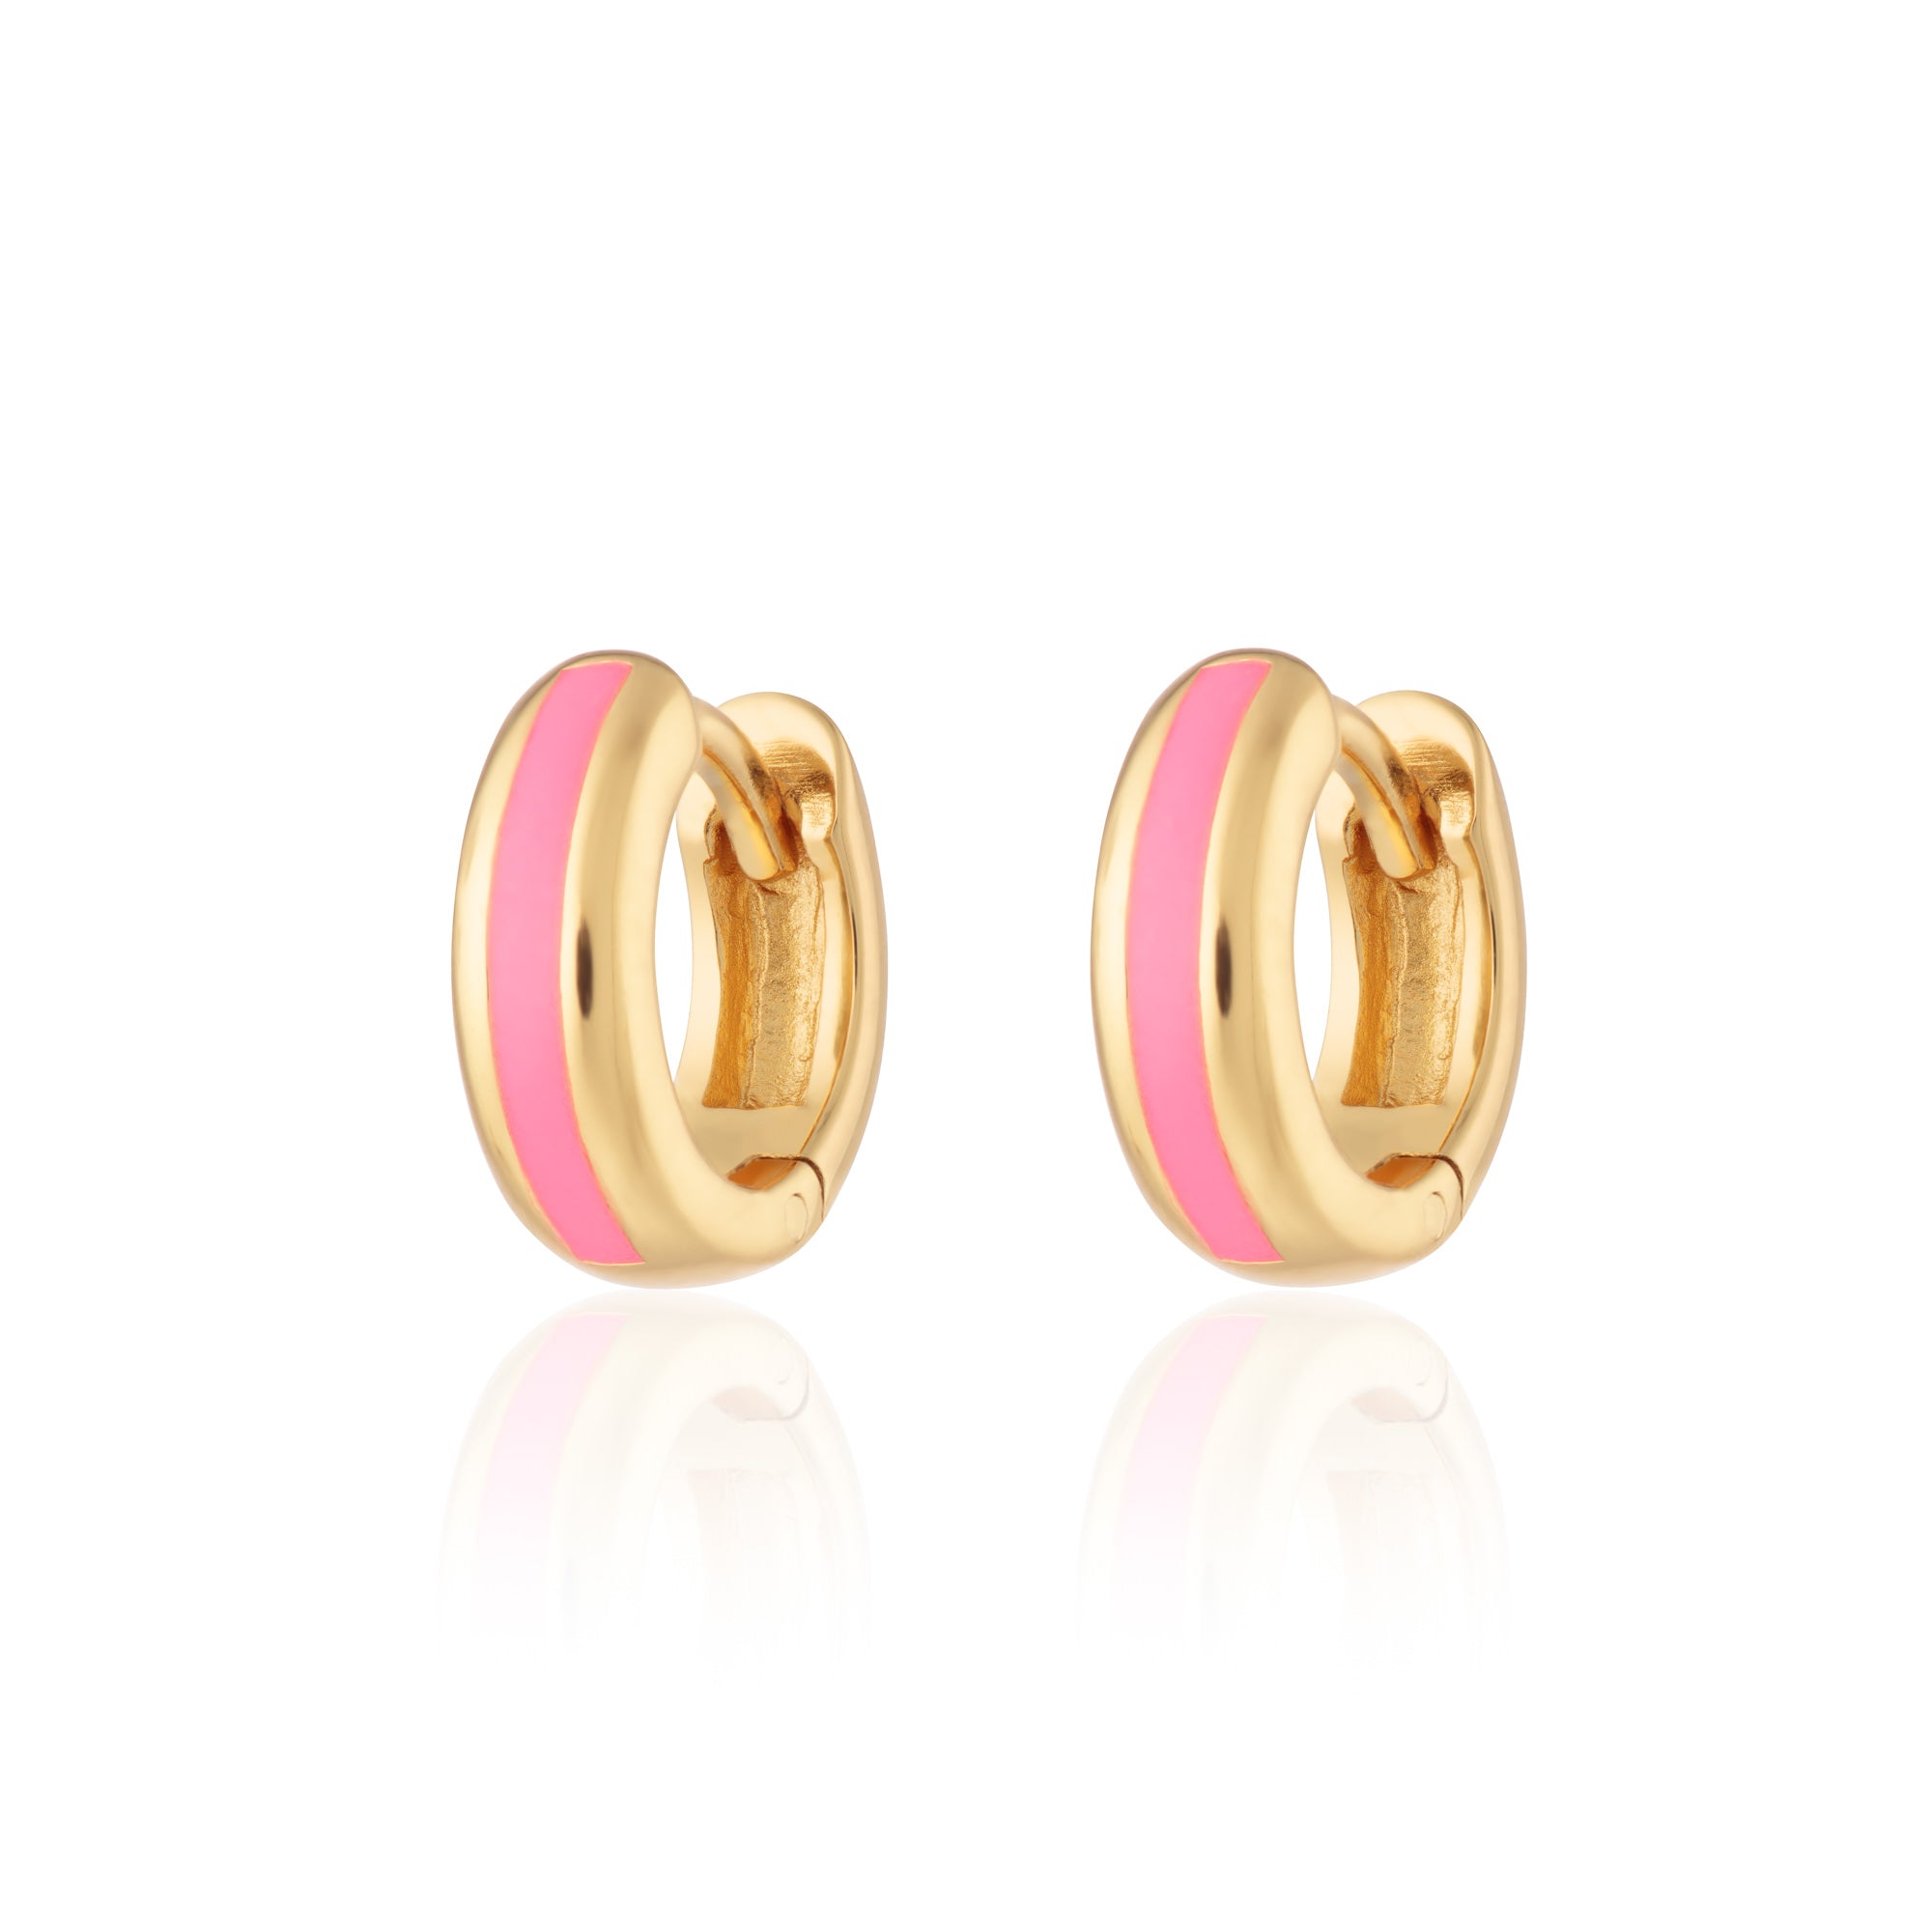 Candy Stripe Huggie Earrings in Neon Pink